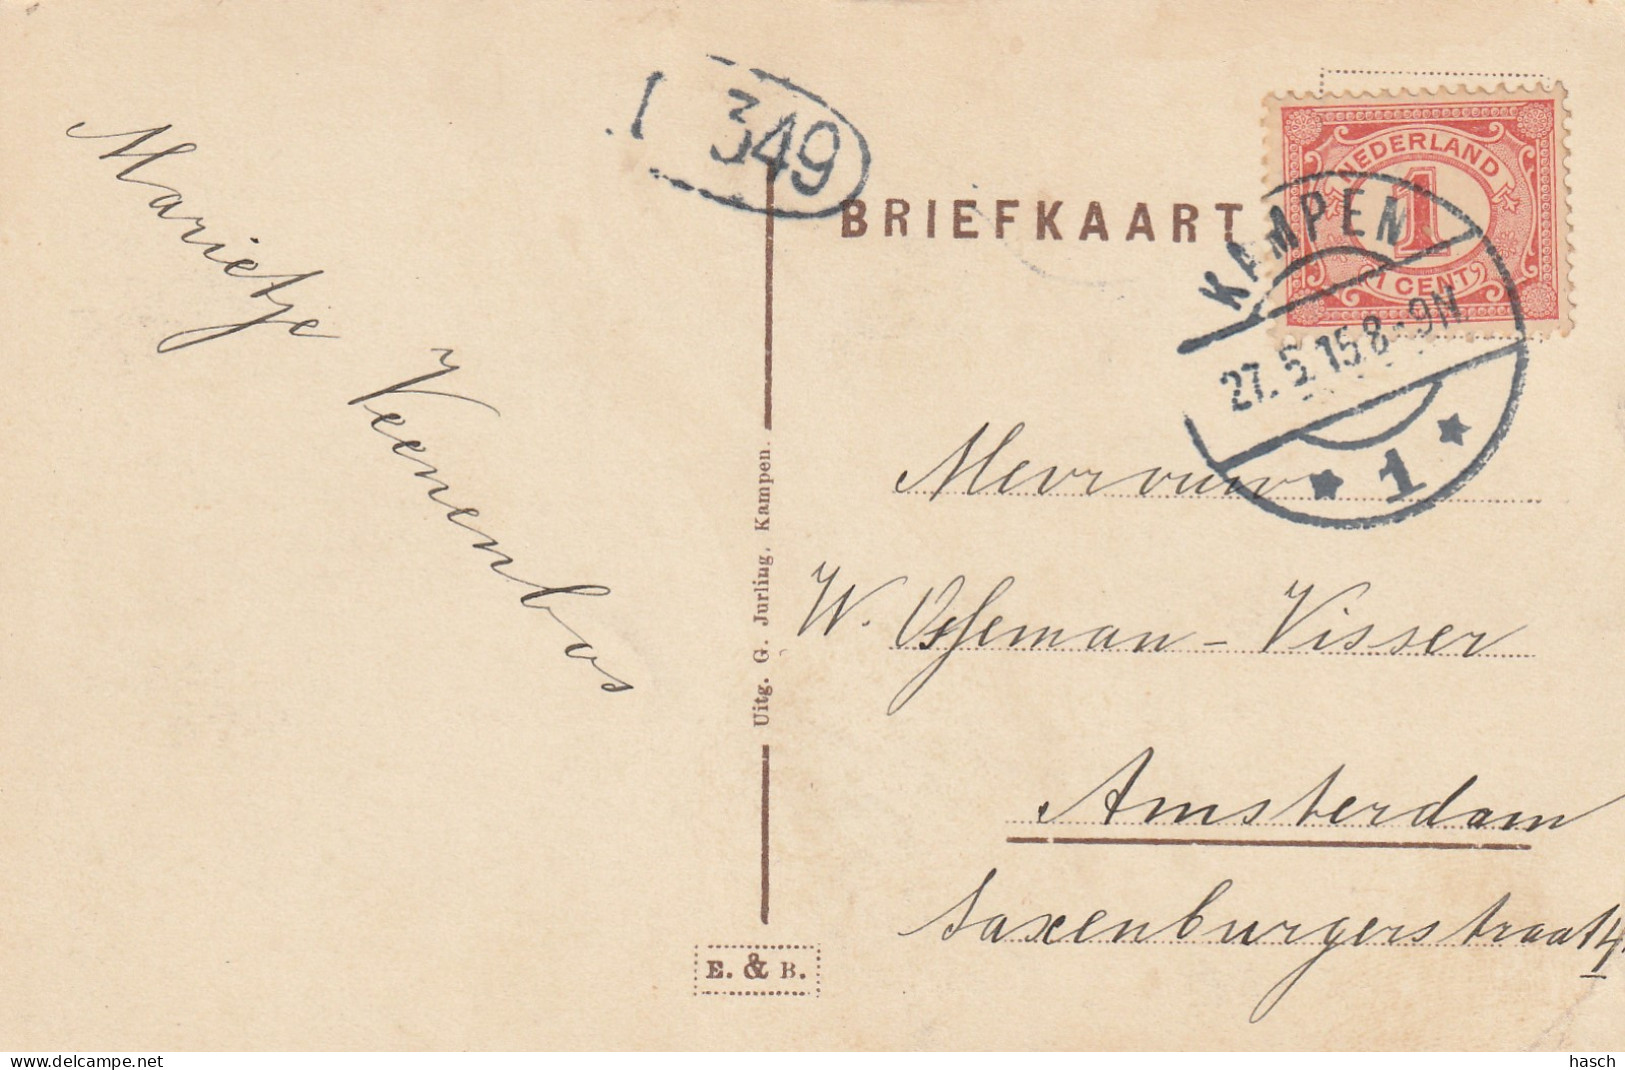 4893183Kampen, Plantsoen. (Langebalk Stempel 1915) (Linksonder Een Kleine Vouw)  - Kampen